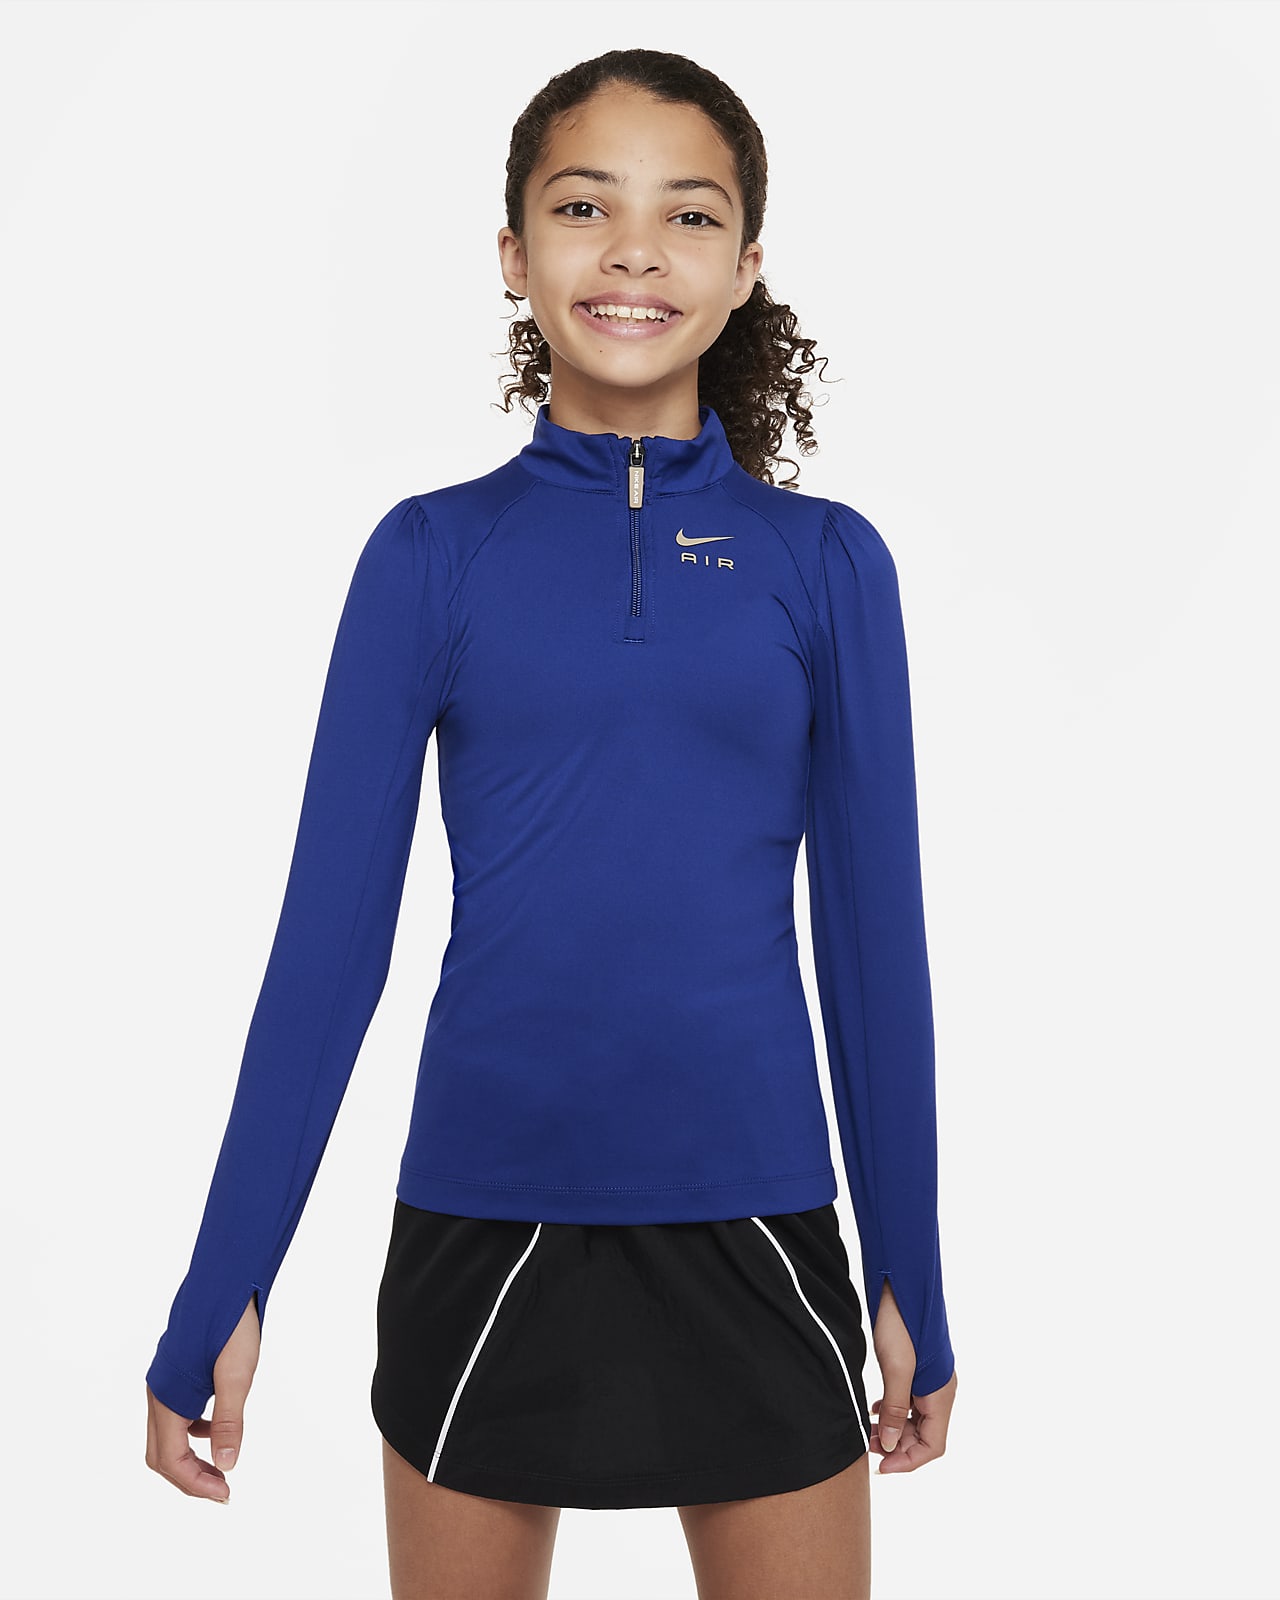 Nike Air Older Kids' (Girls') Base Layer Top